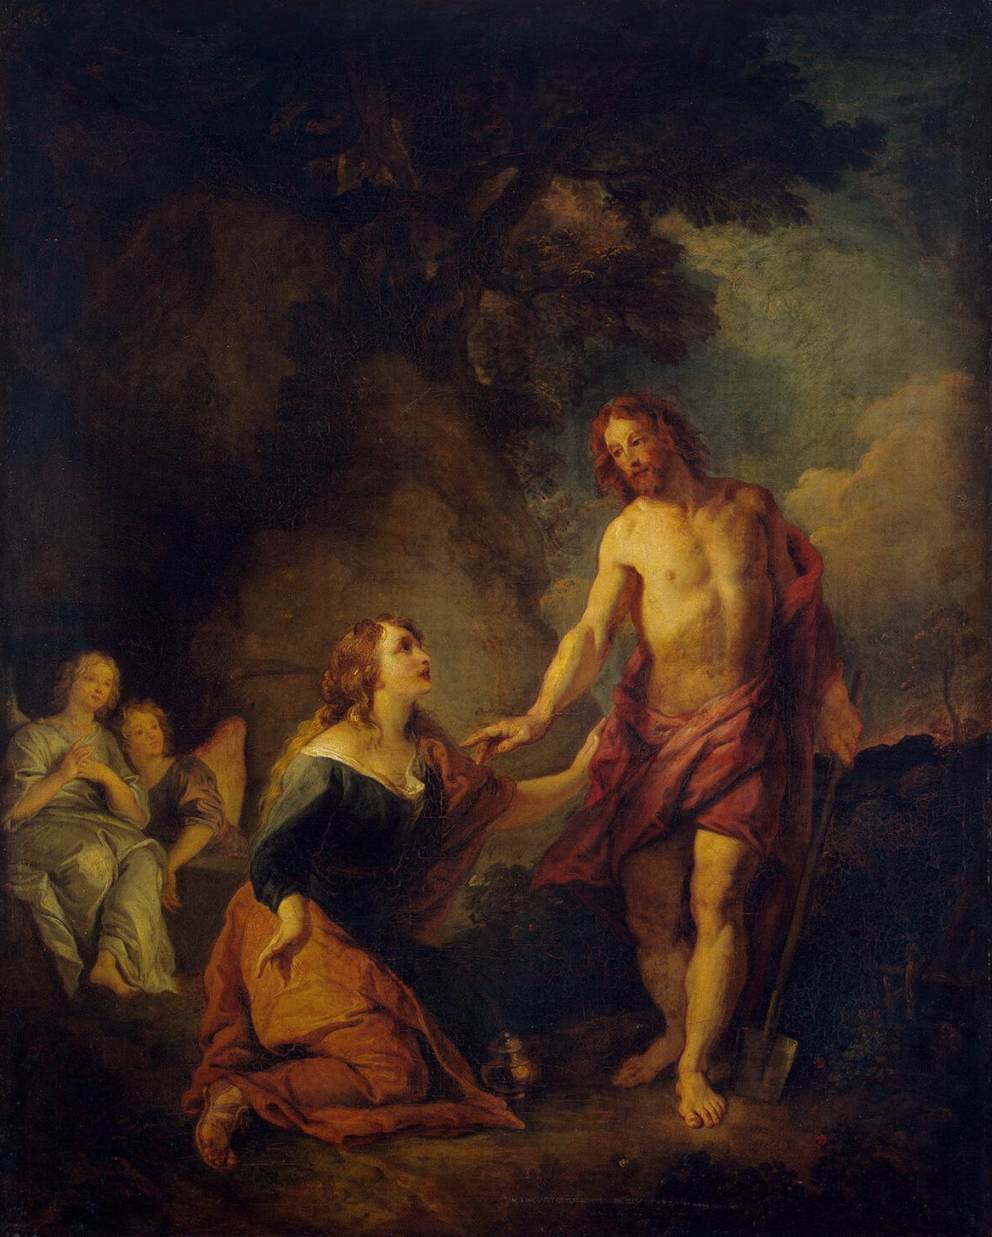 Cristo Apareciendo a María Magdalena